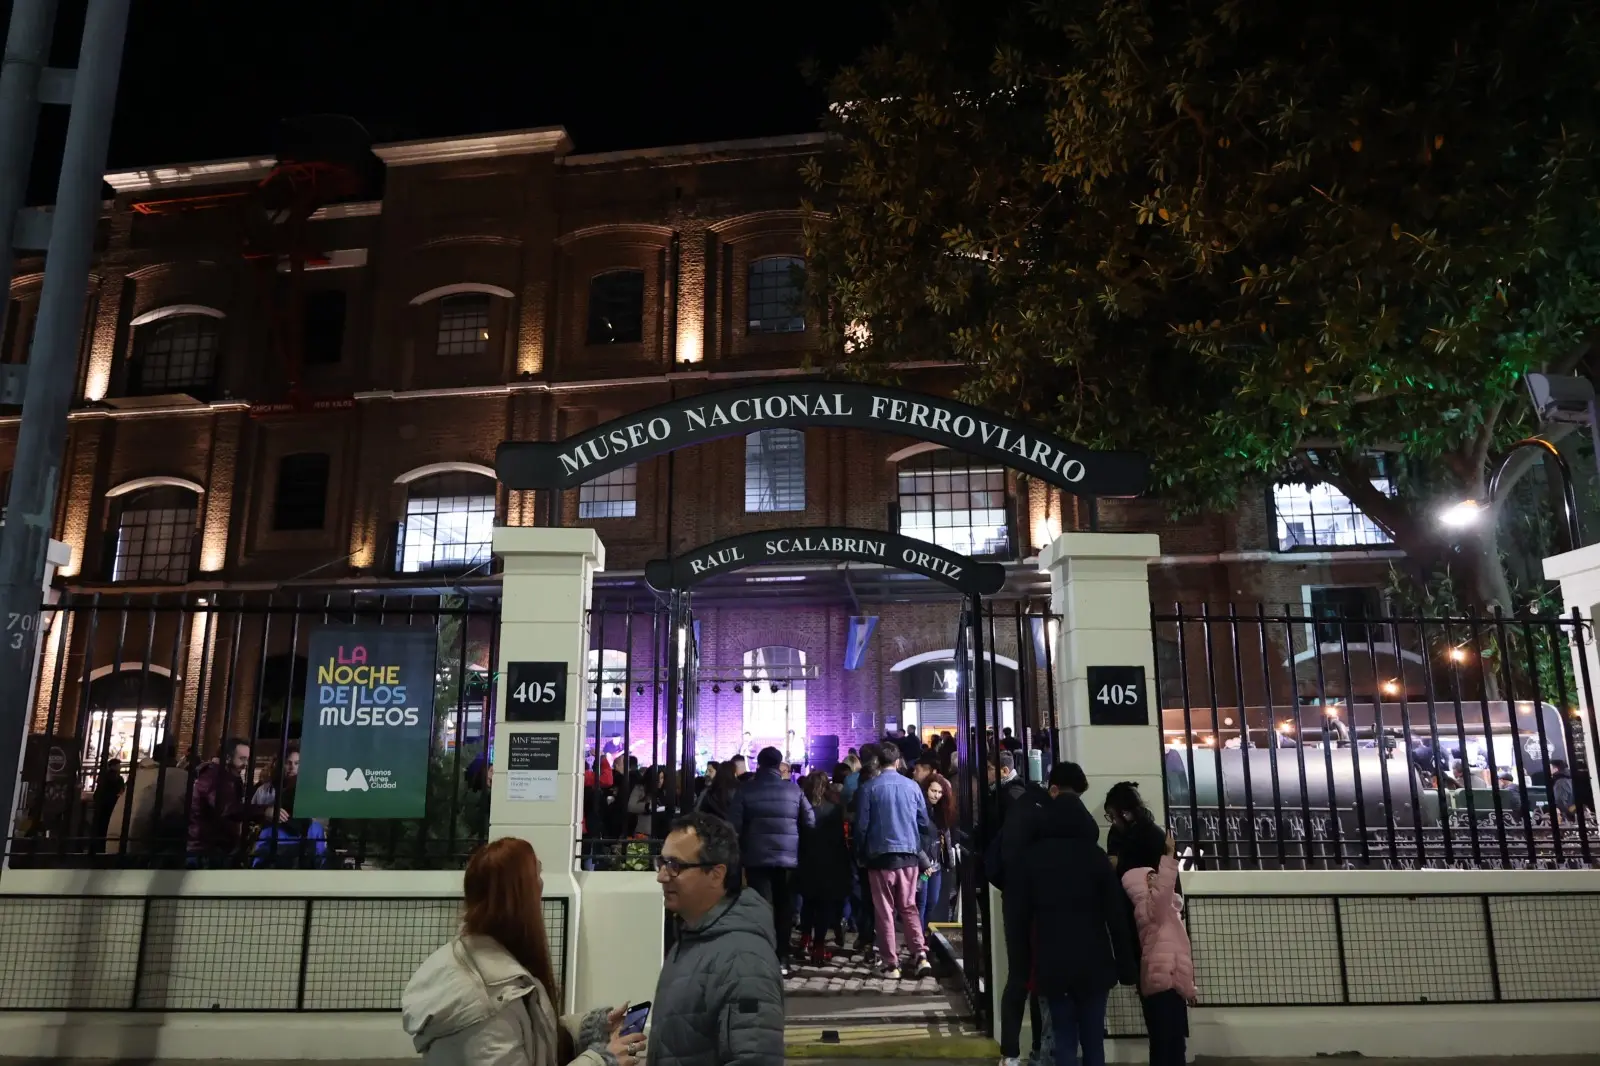 museo nacional ferroviario noches de los museos - Qué Museos participan de la Noche de los Museos